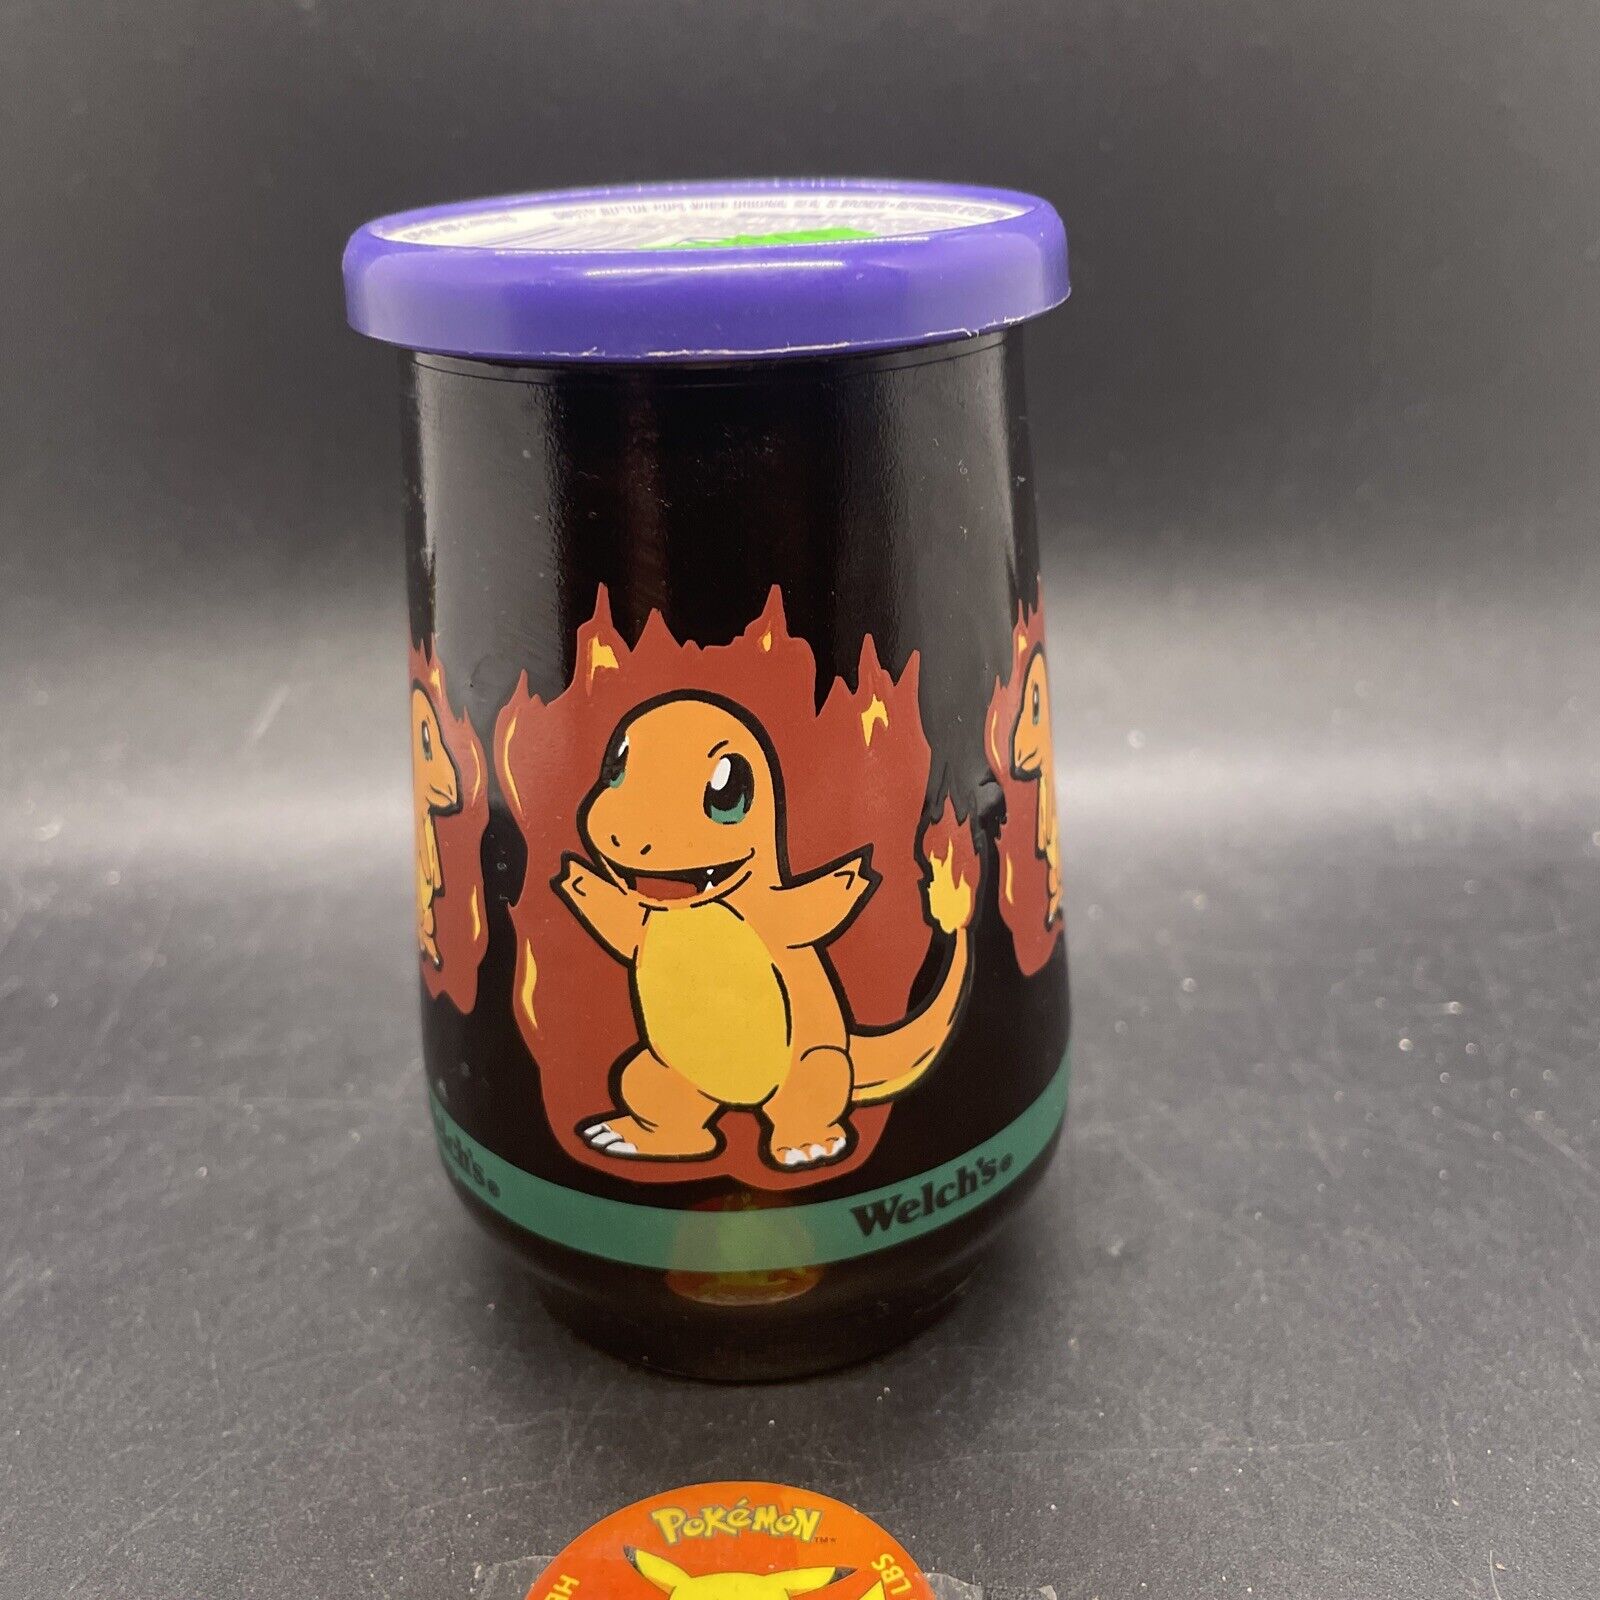 Vintage Charmander Welch’s Pokémon #04 Jelly Jar Glass Nintendo New With Jelly